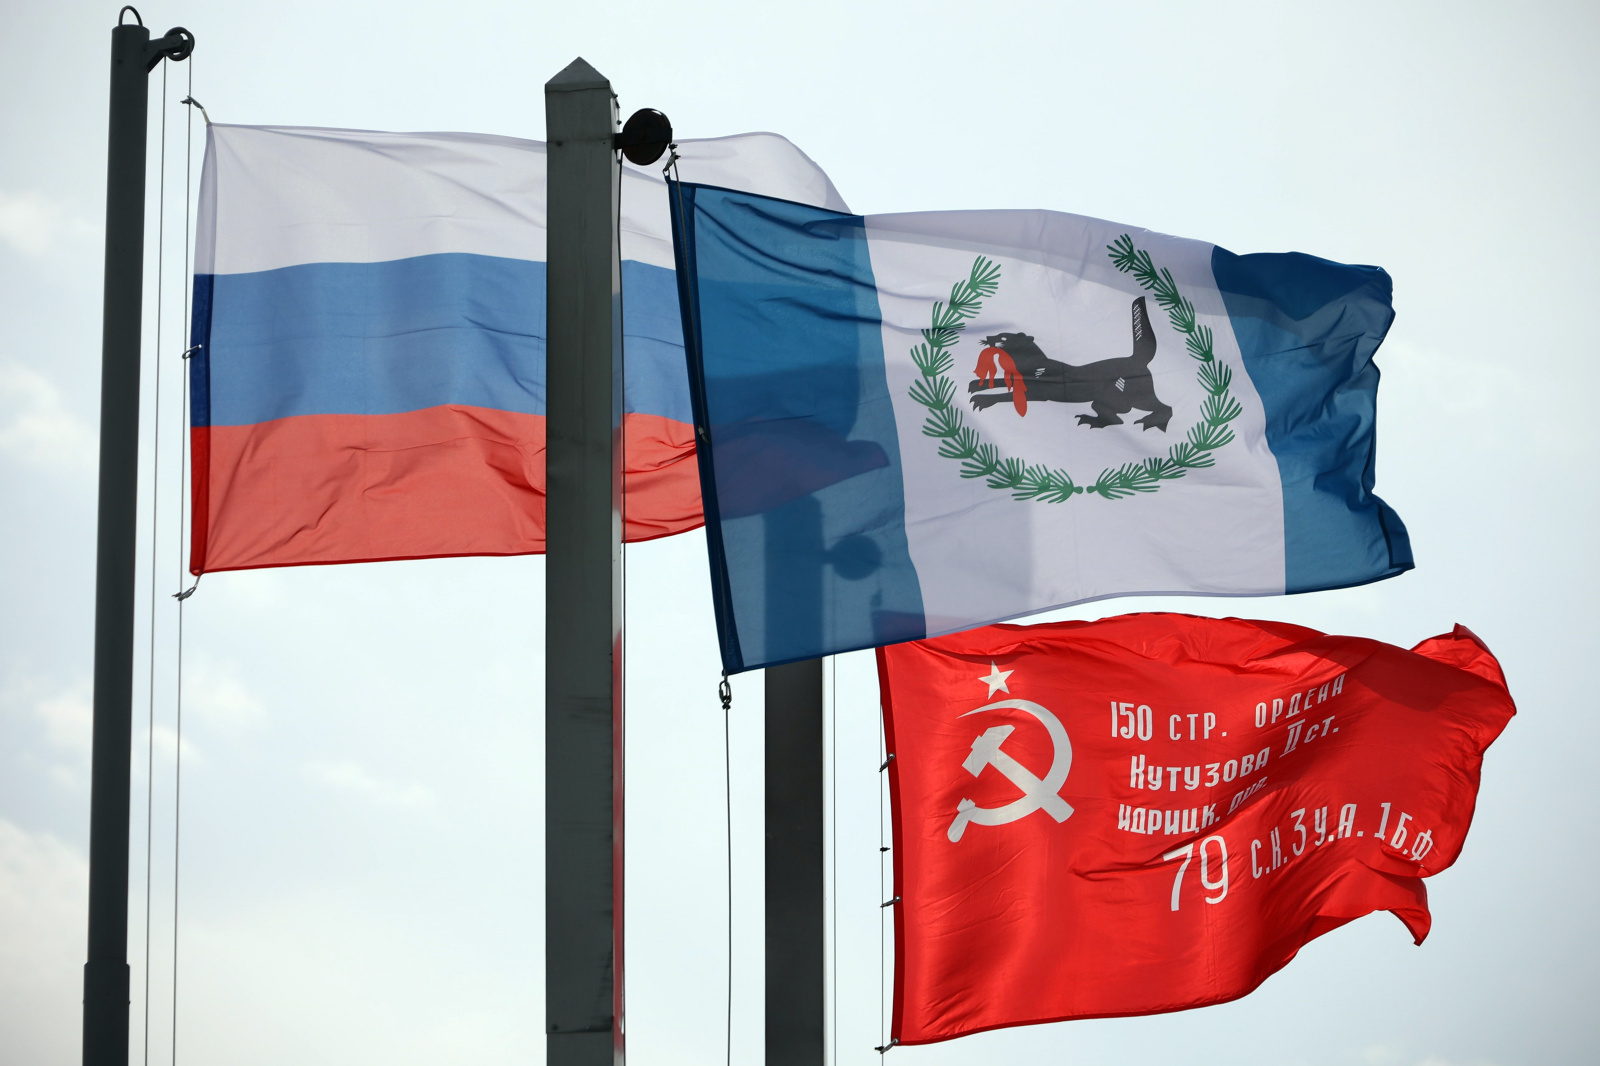 Копию Знамени Победы подняли над зданием правительства Иркутской области